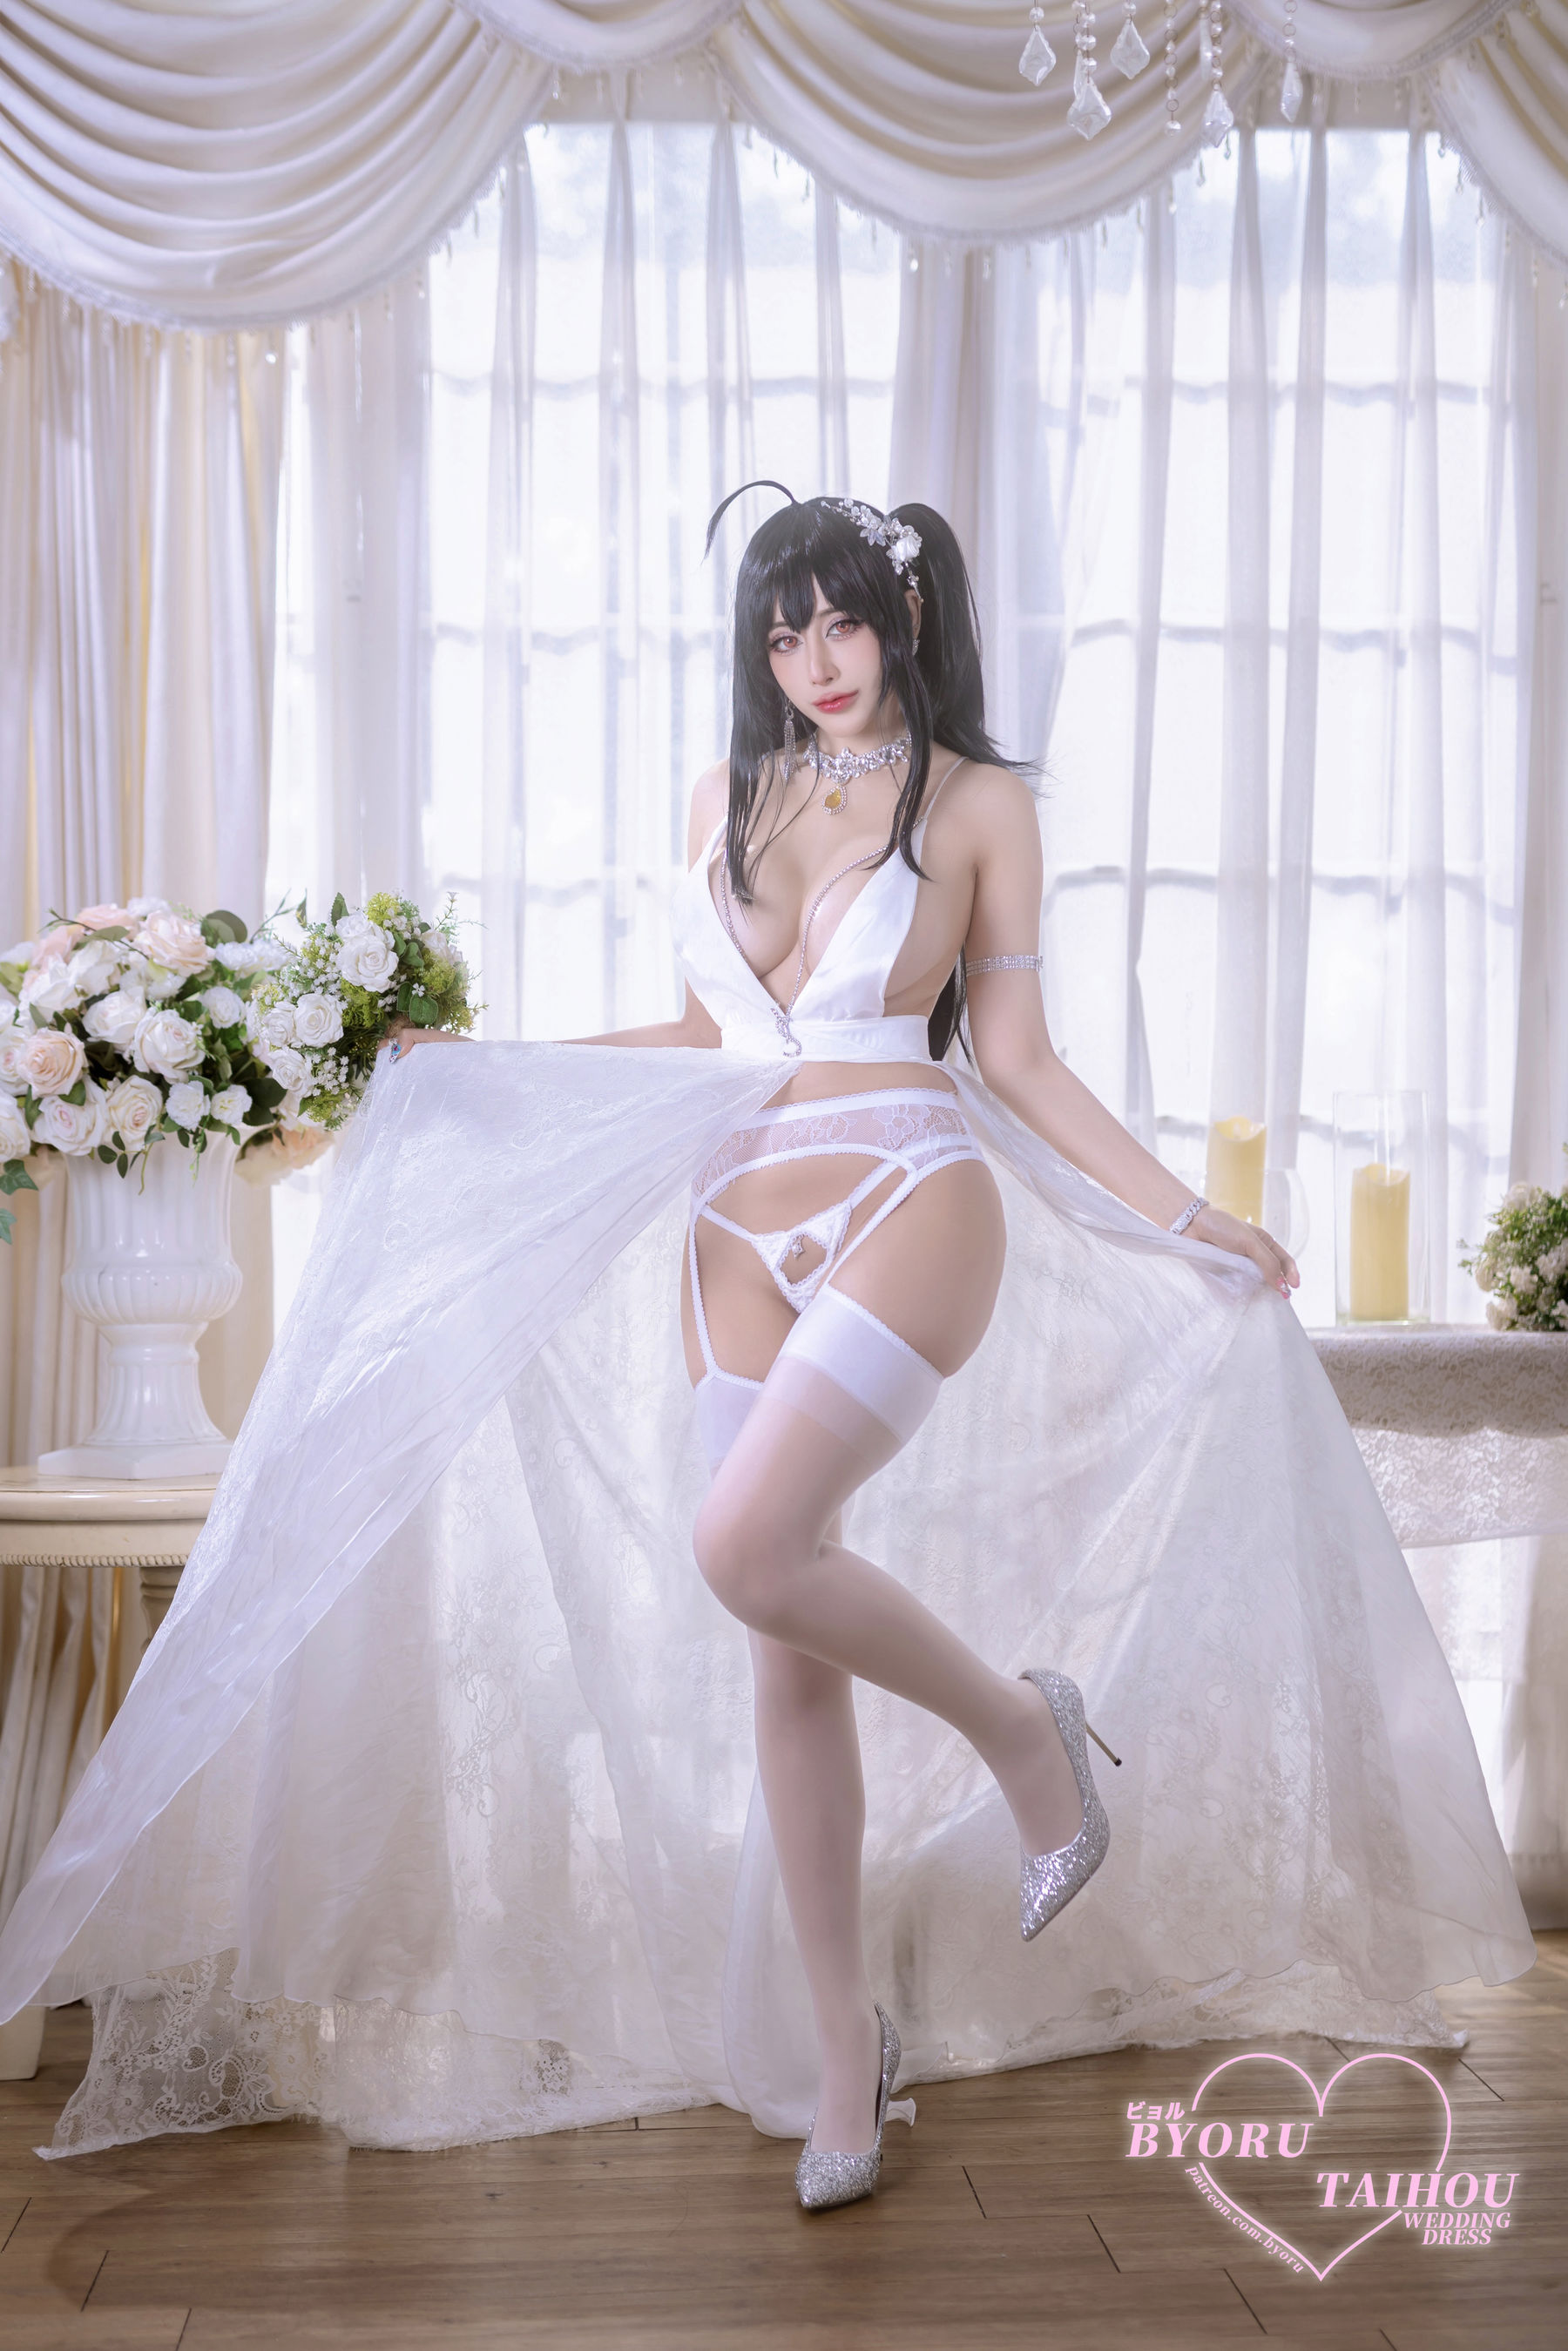 日本性感萝莉 Byoru - Taihou wedding dress